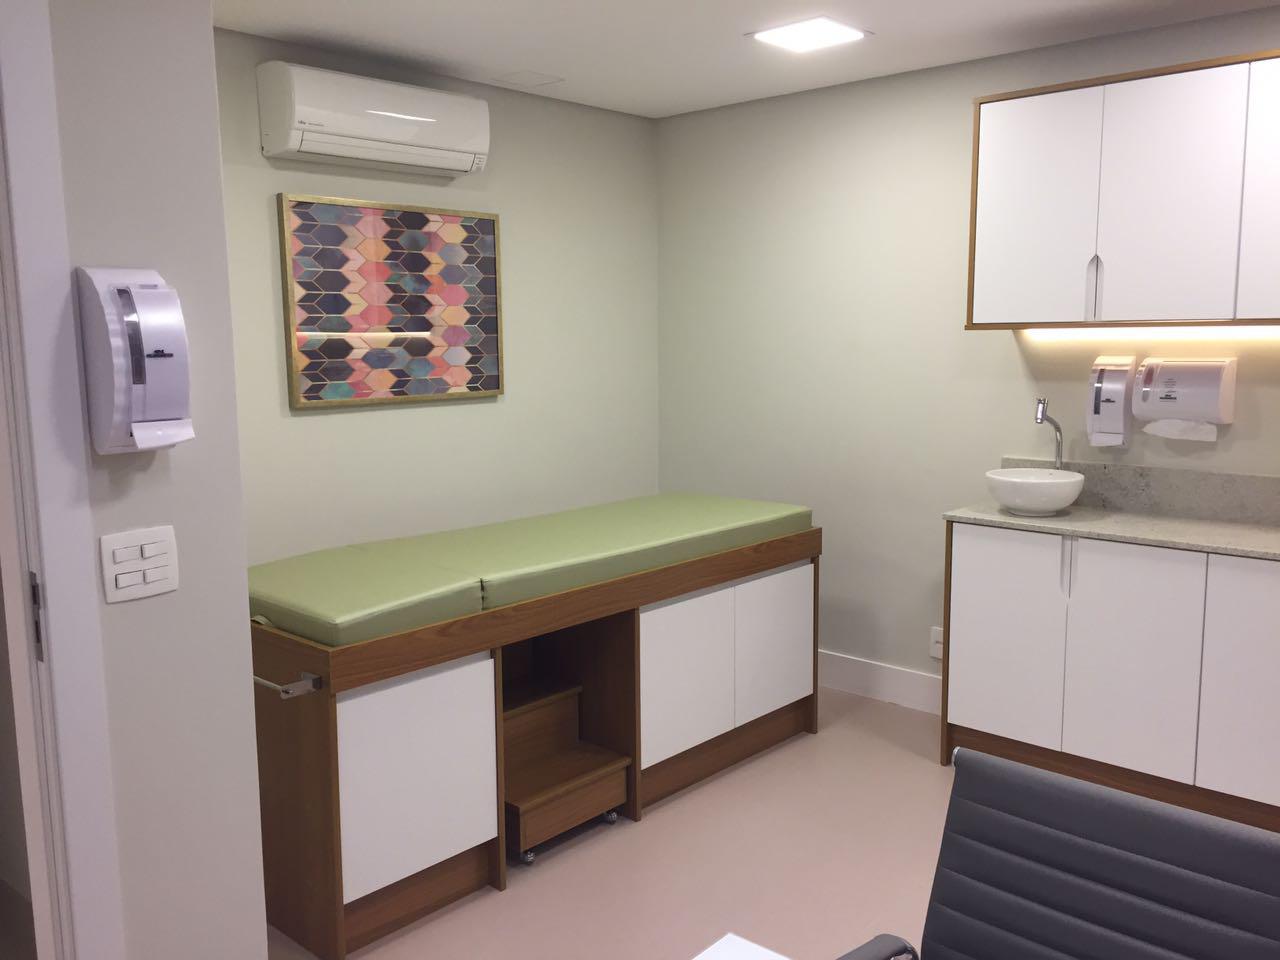 Imagem - Aluguel de salas por período em clínica de alto padrão-CÓD.16293